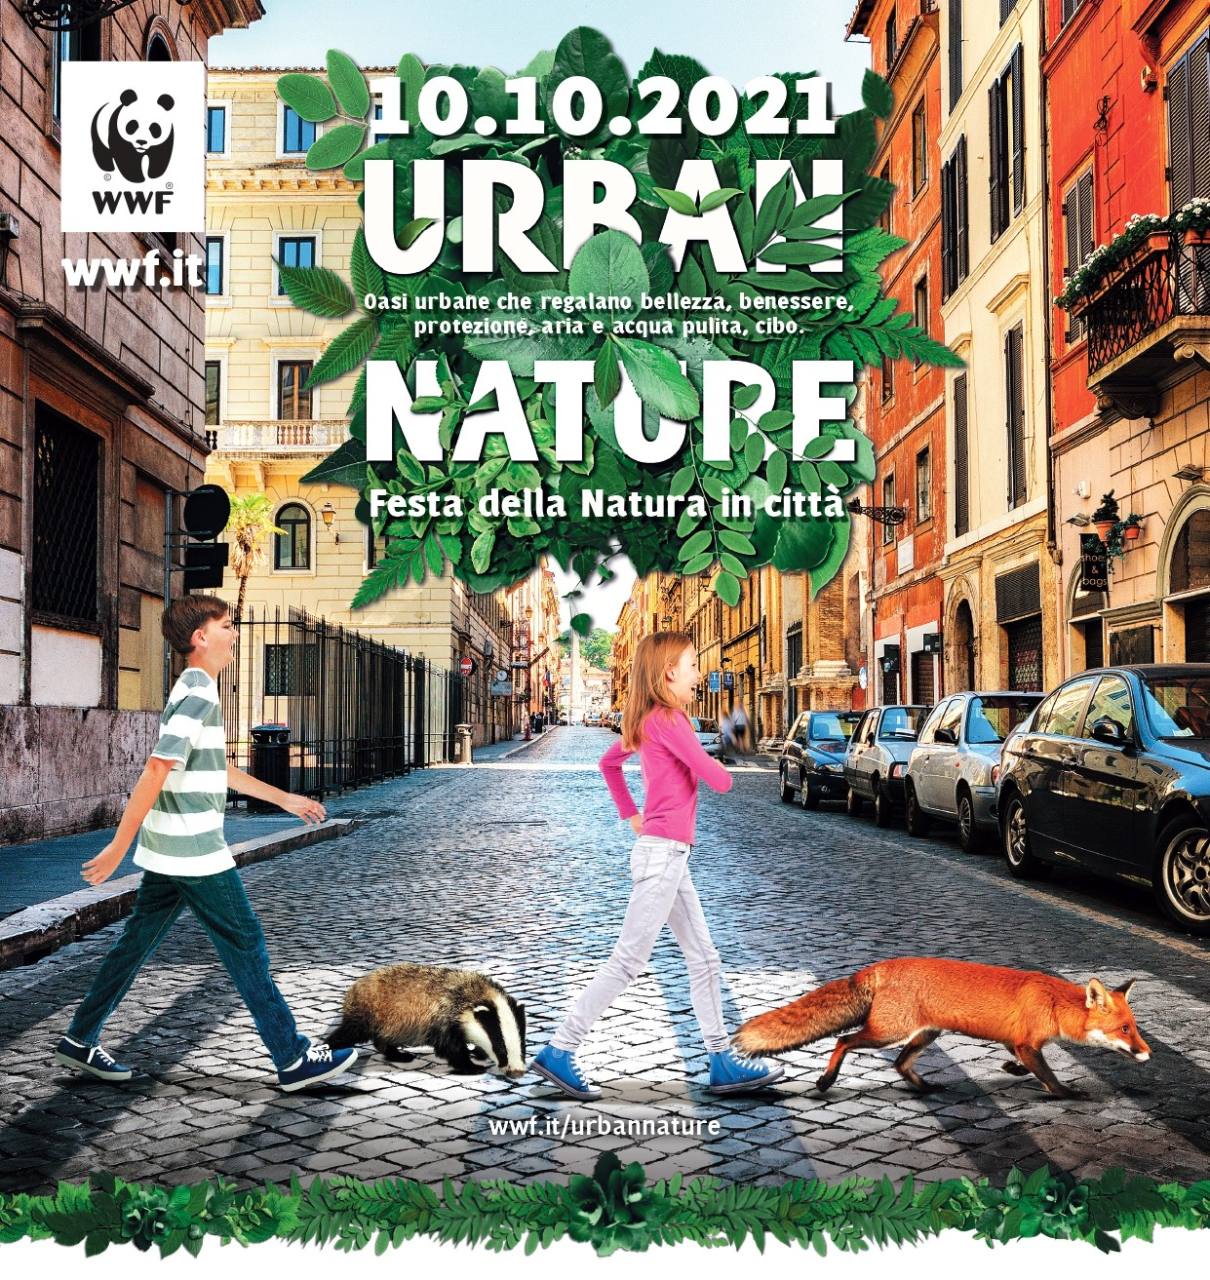 WWF, Urban Nature 2021 la Festa della Natura in città, torna domenica 10 ottobre